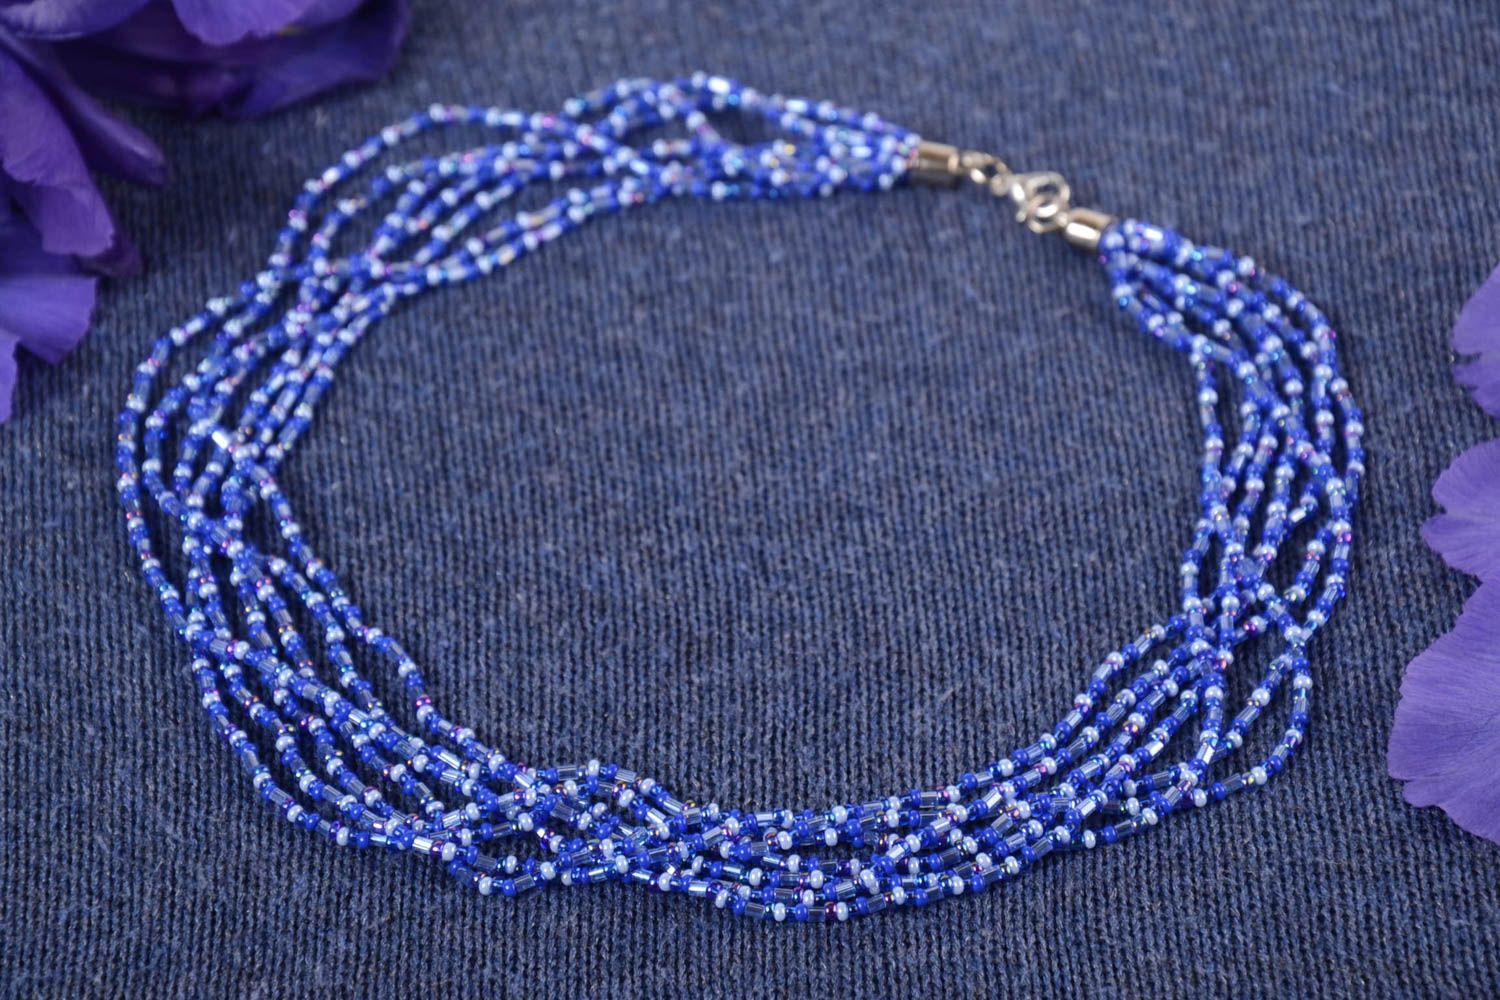 Ожерелье из бисера длинное голубое красивое на шею женское ручная работа фото 1